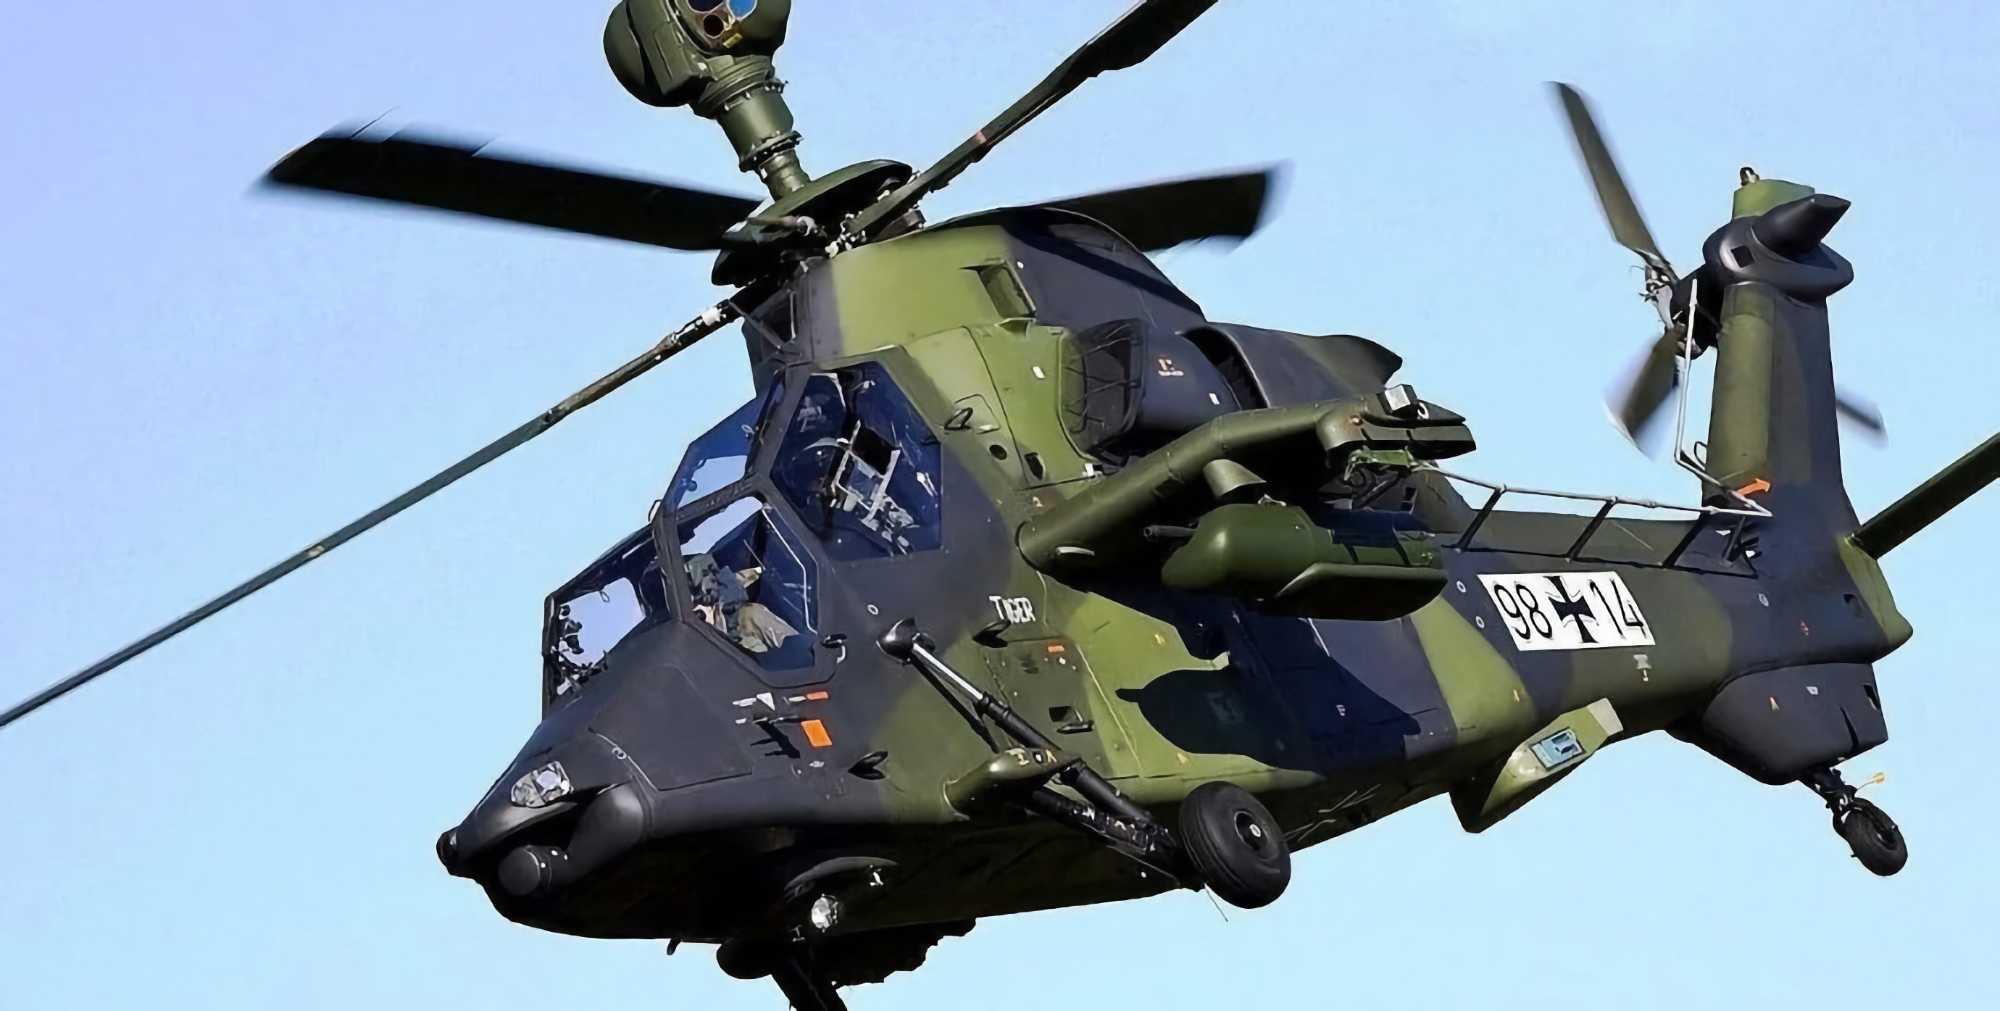 Vertrag über 100 Millionen Euro: Deutschland kauft ungelenkte 70-mm-Raketen für Eurocopter-Hubschrauber Tiger UHT/KHT bei Rheinmetall